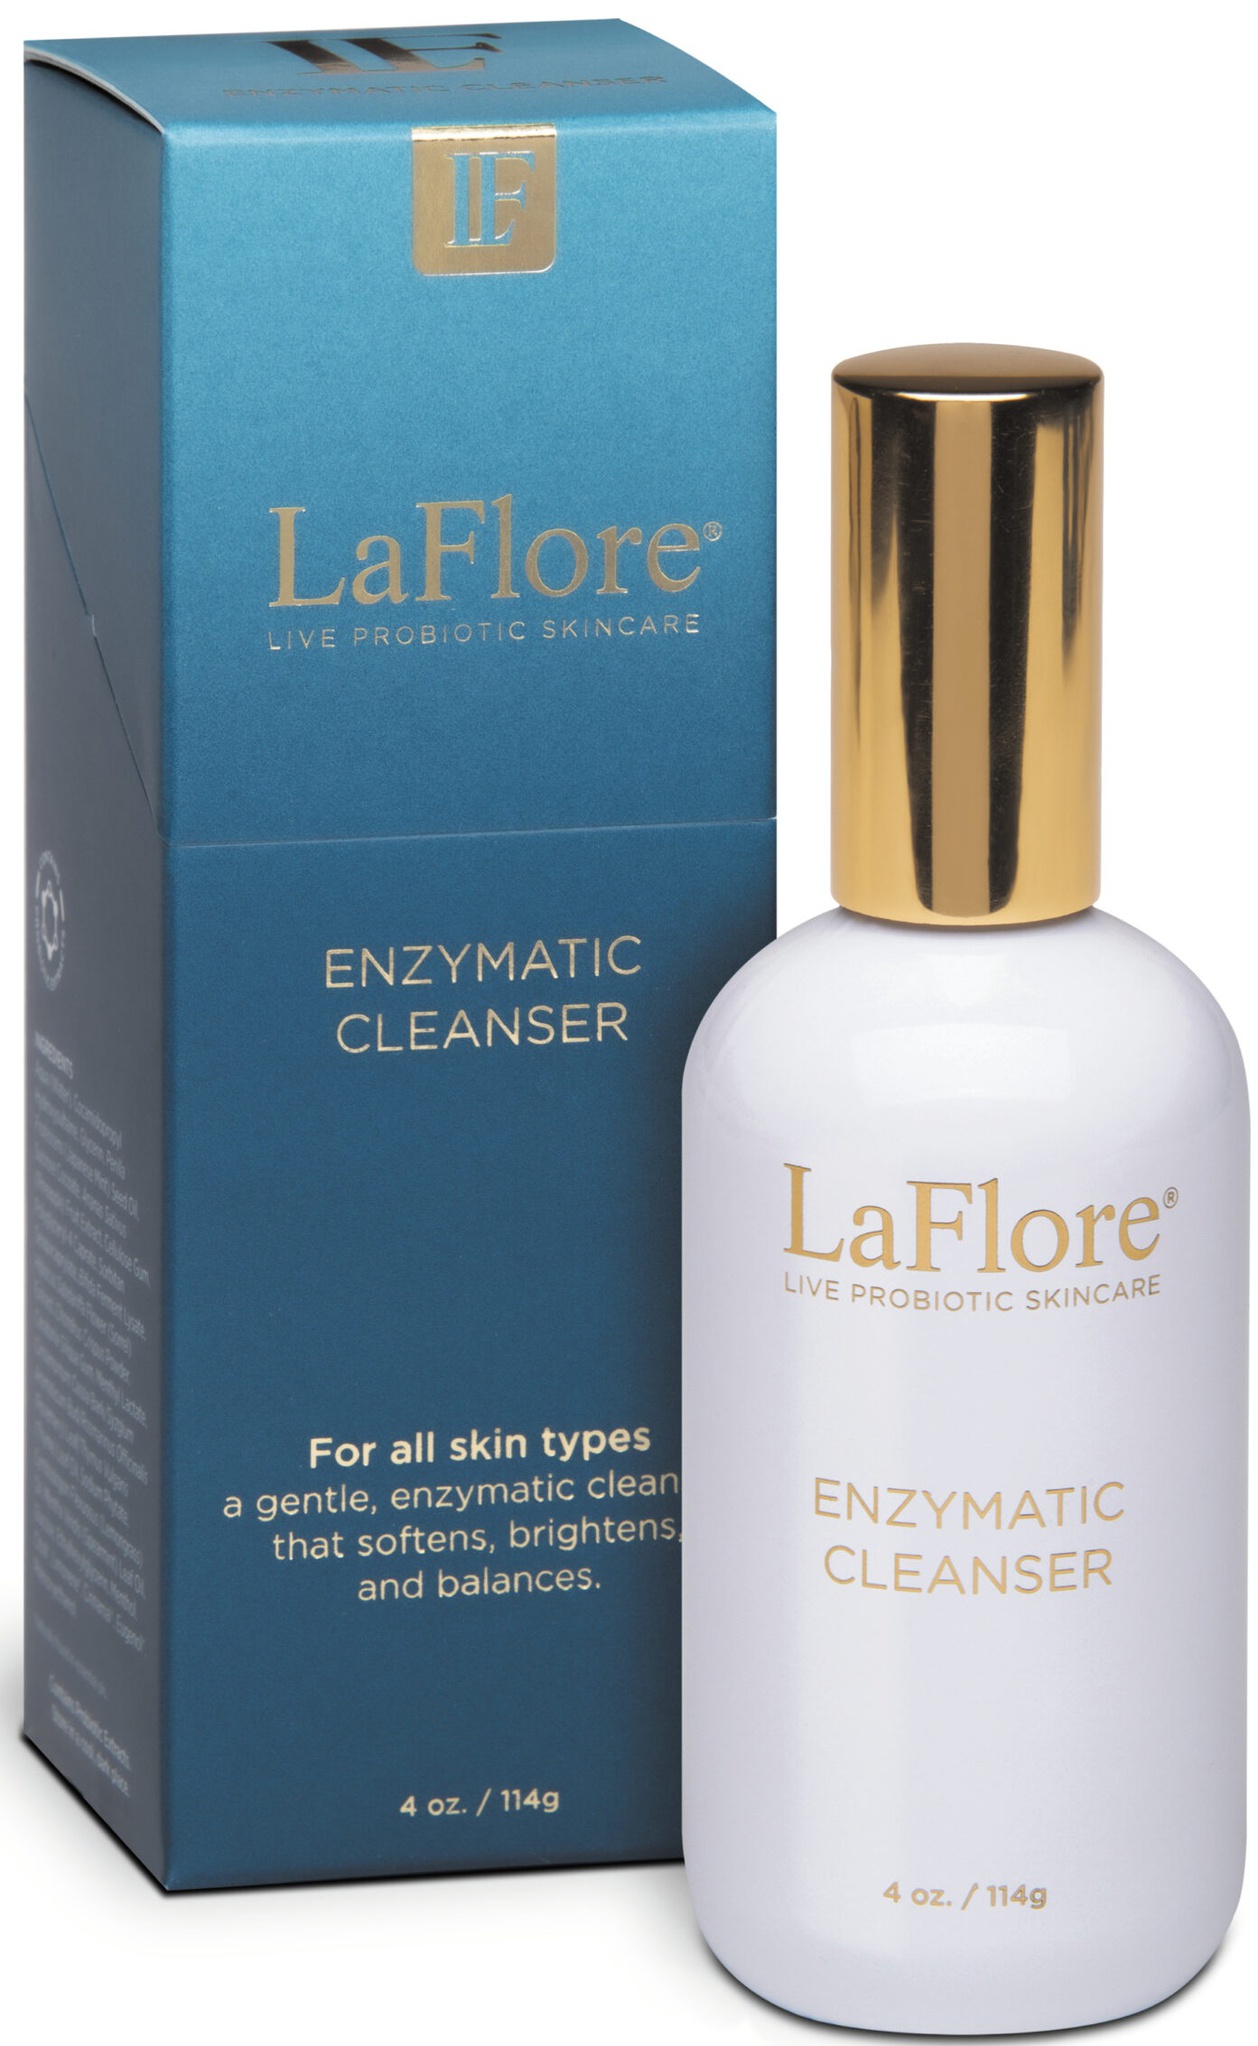 LaFlore Live Probiotic Skincare Enzymatic Cleanser